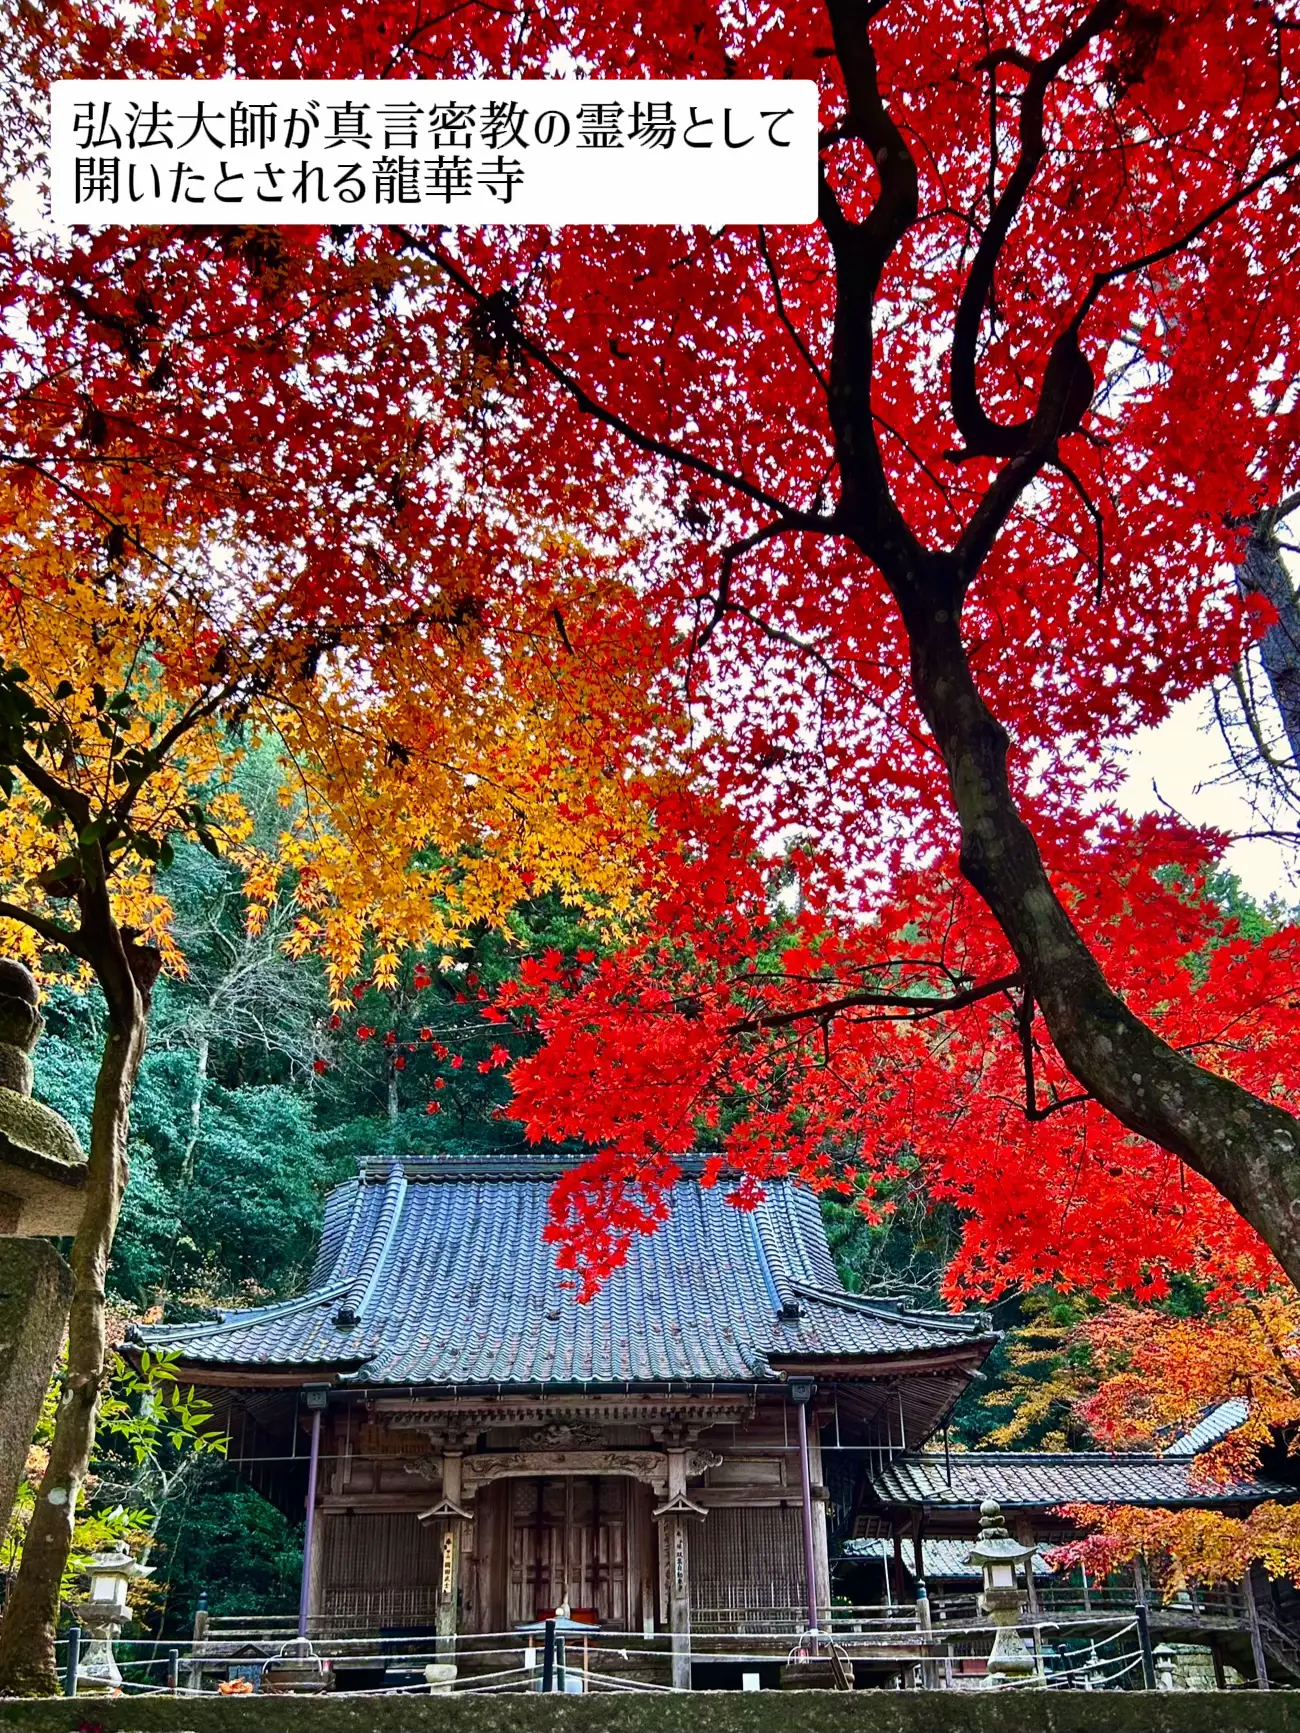 【広島】🌸桜と🍁紅葉で有名な歴史ある隠れたスポット「今高野山龍華寺」の画像 (6枚目)